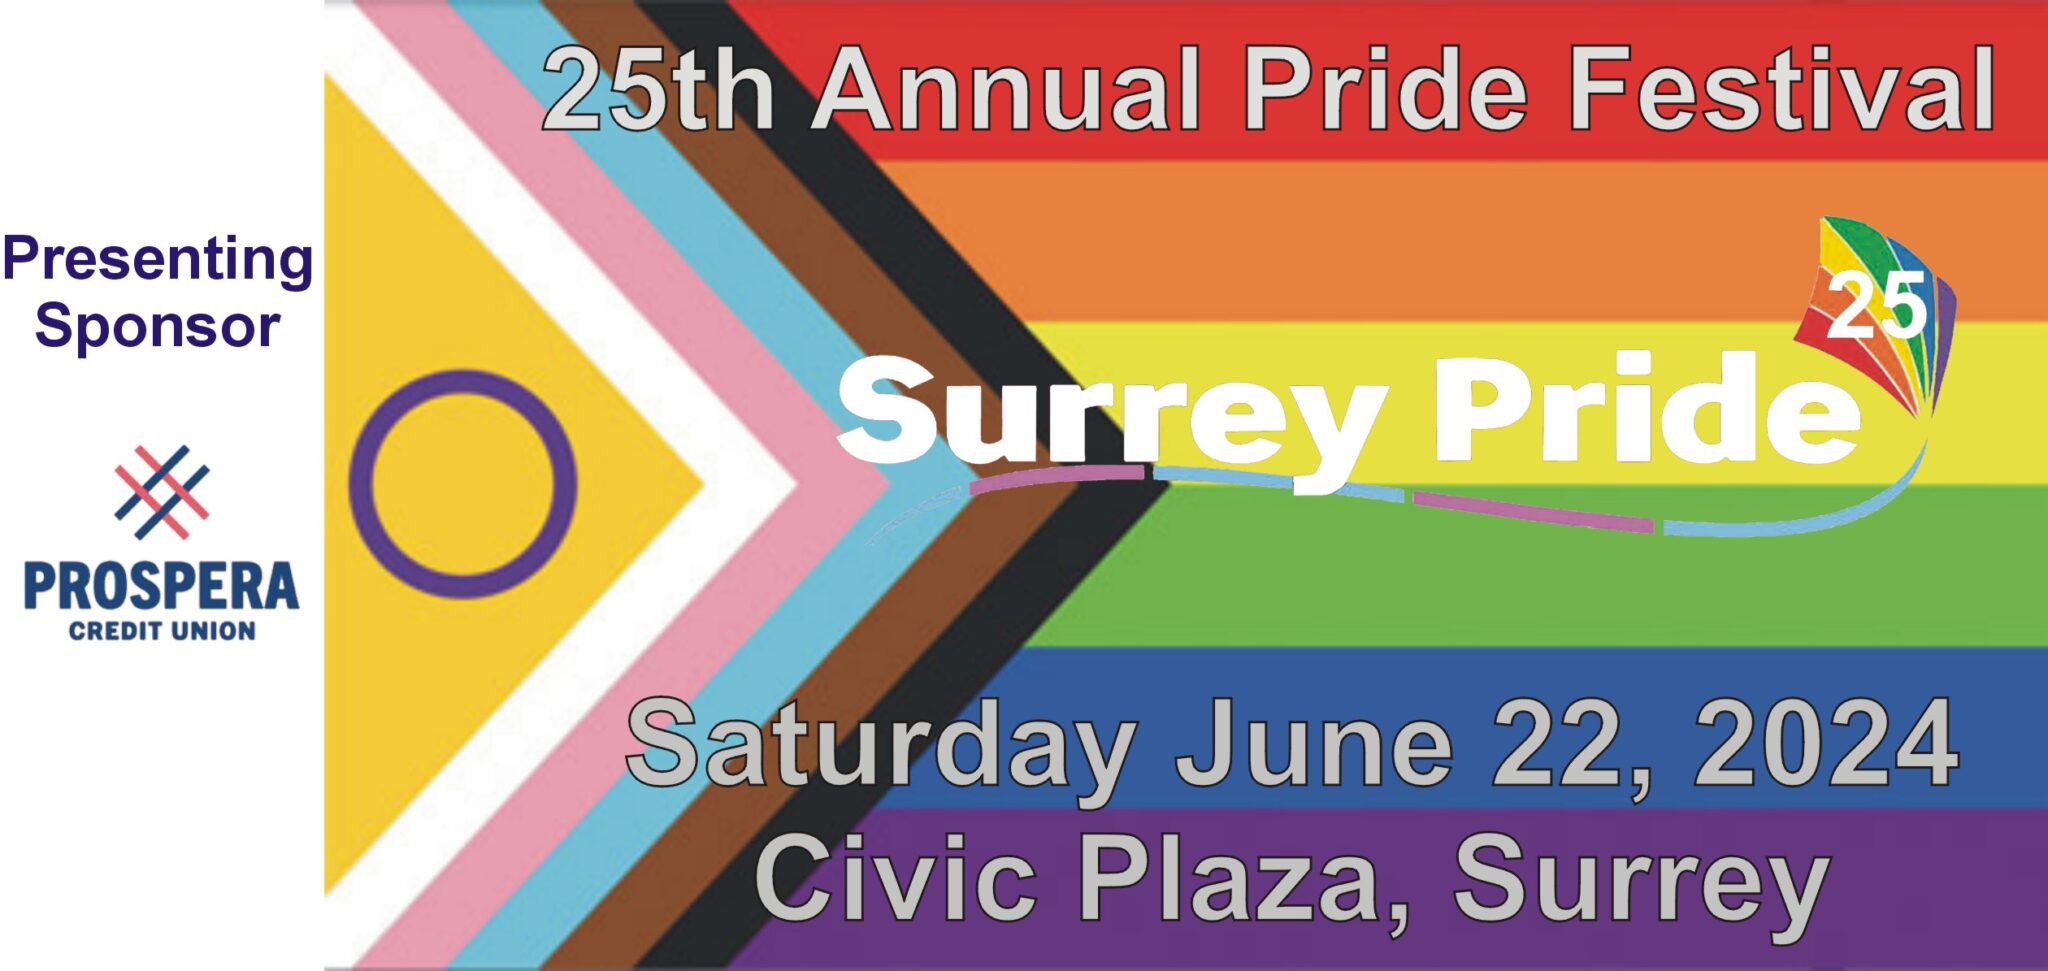 Surrey Pride 2024 25th Anniversary Festival June 22 2024